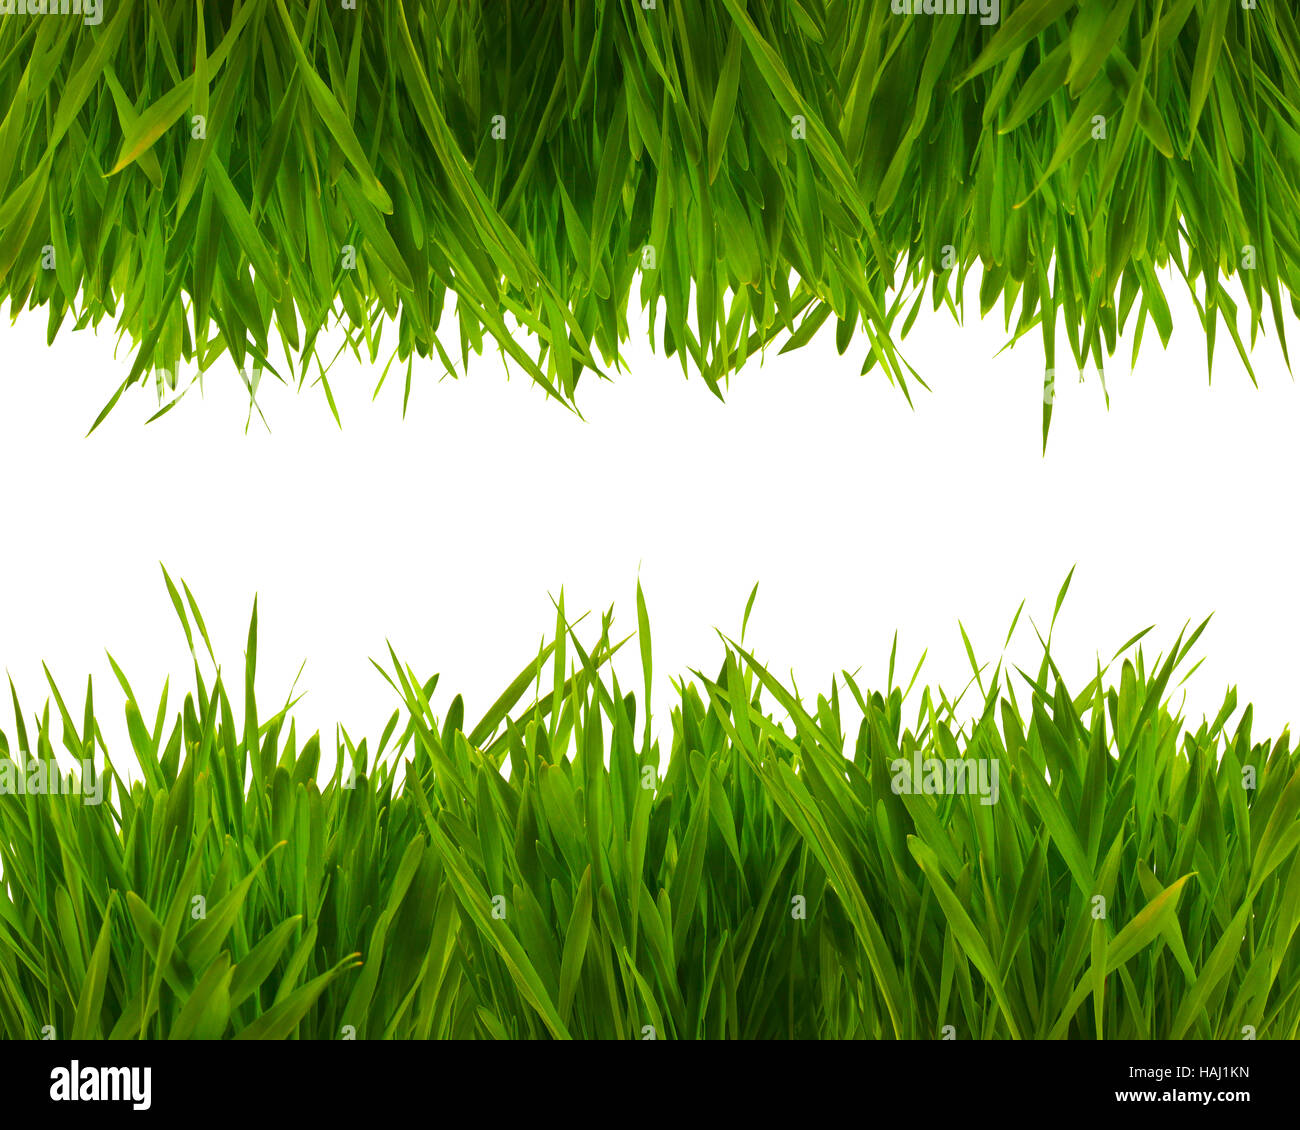 Primavera fresca hierba verde aislado sobre fondo blanco. Foto de stock